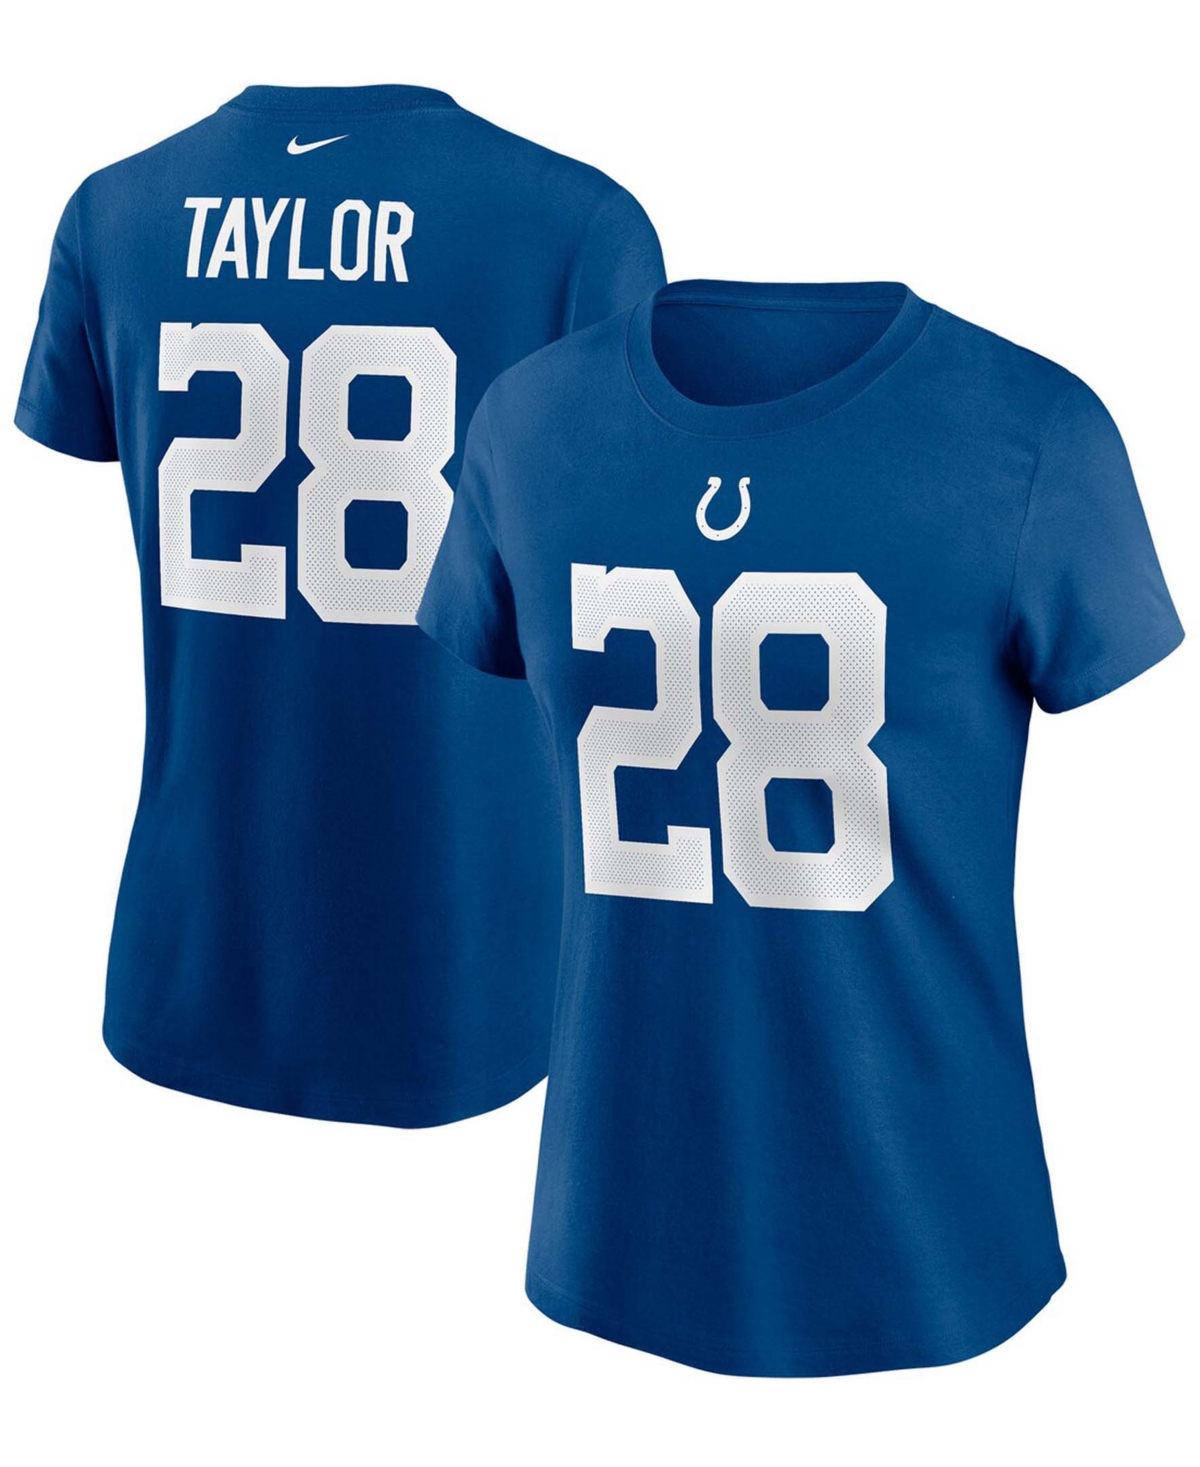 Women's Jonathan Taylor Royal Indianapolis Colts Name Number T-shirt - Royal